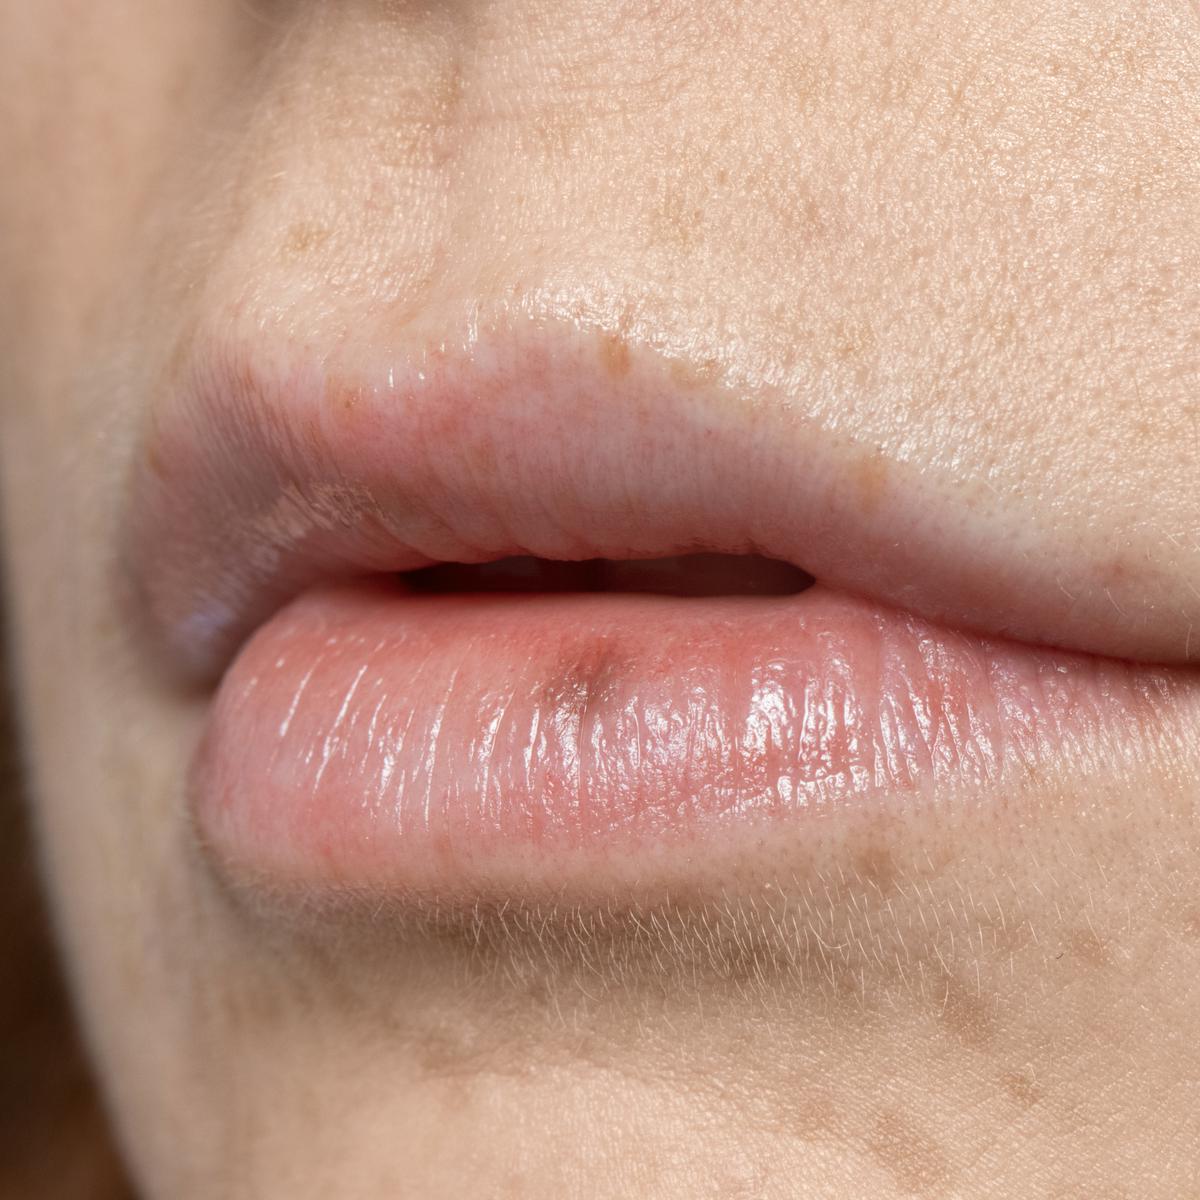 El brillo de labios o 'gloss' aumenta el riesgo de cáncer de piel